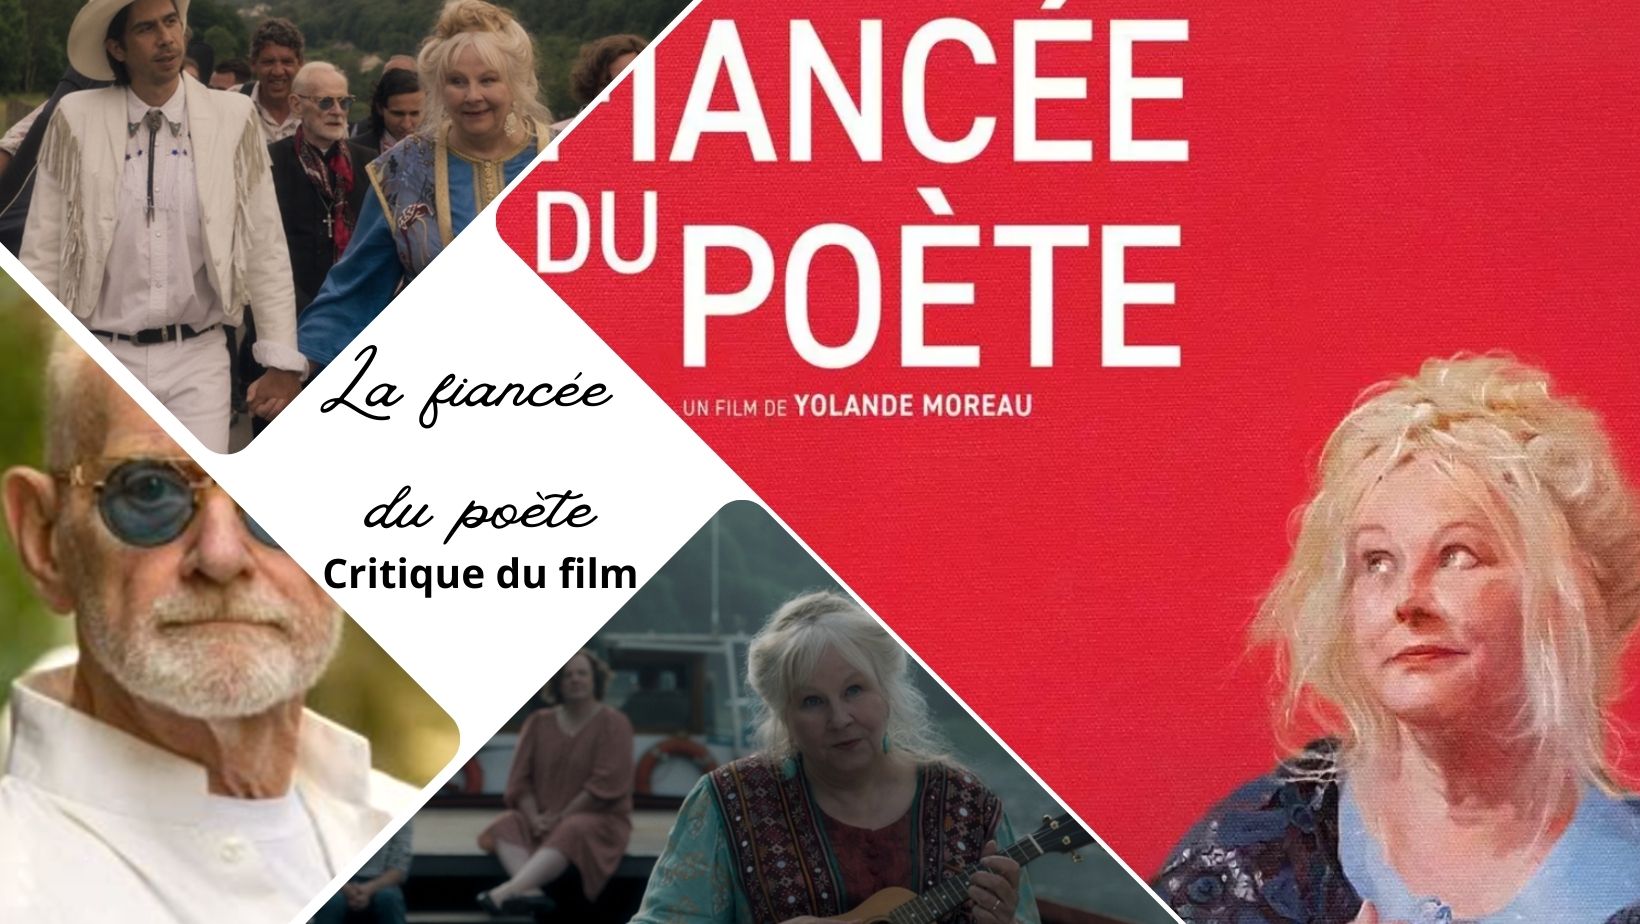 La fiancée du poète de Yolande Moreau - Critique du film